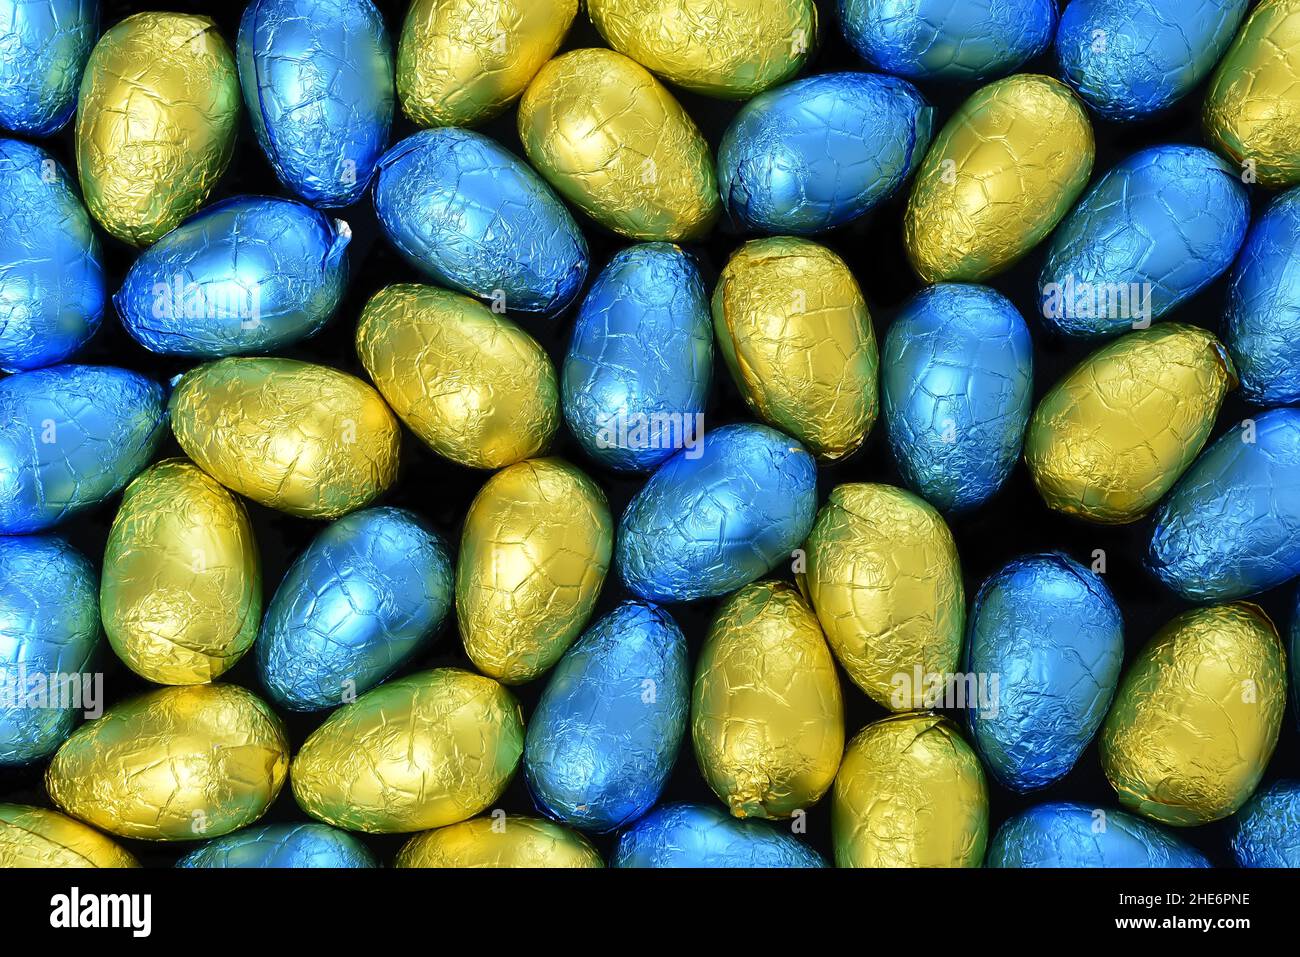 Stapel oder Gruppe von mehrfarbigen und verschiedenen Größen von bunten Folie verpackt Schokolade ostereier in blau, gelb und lindgrün. Stockfoto